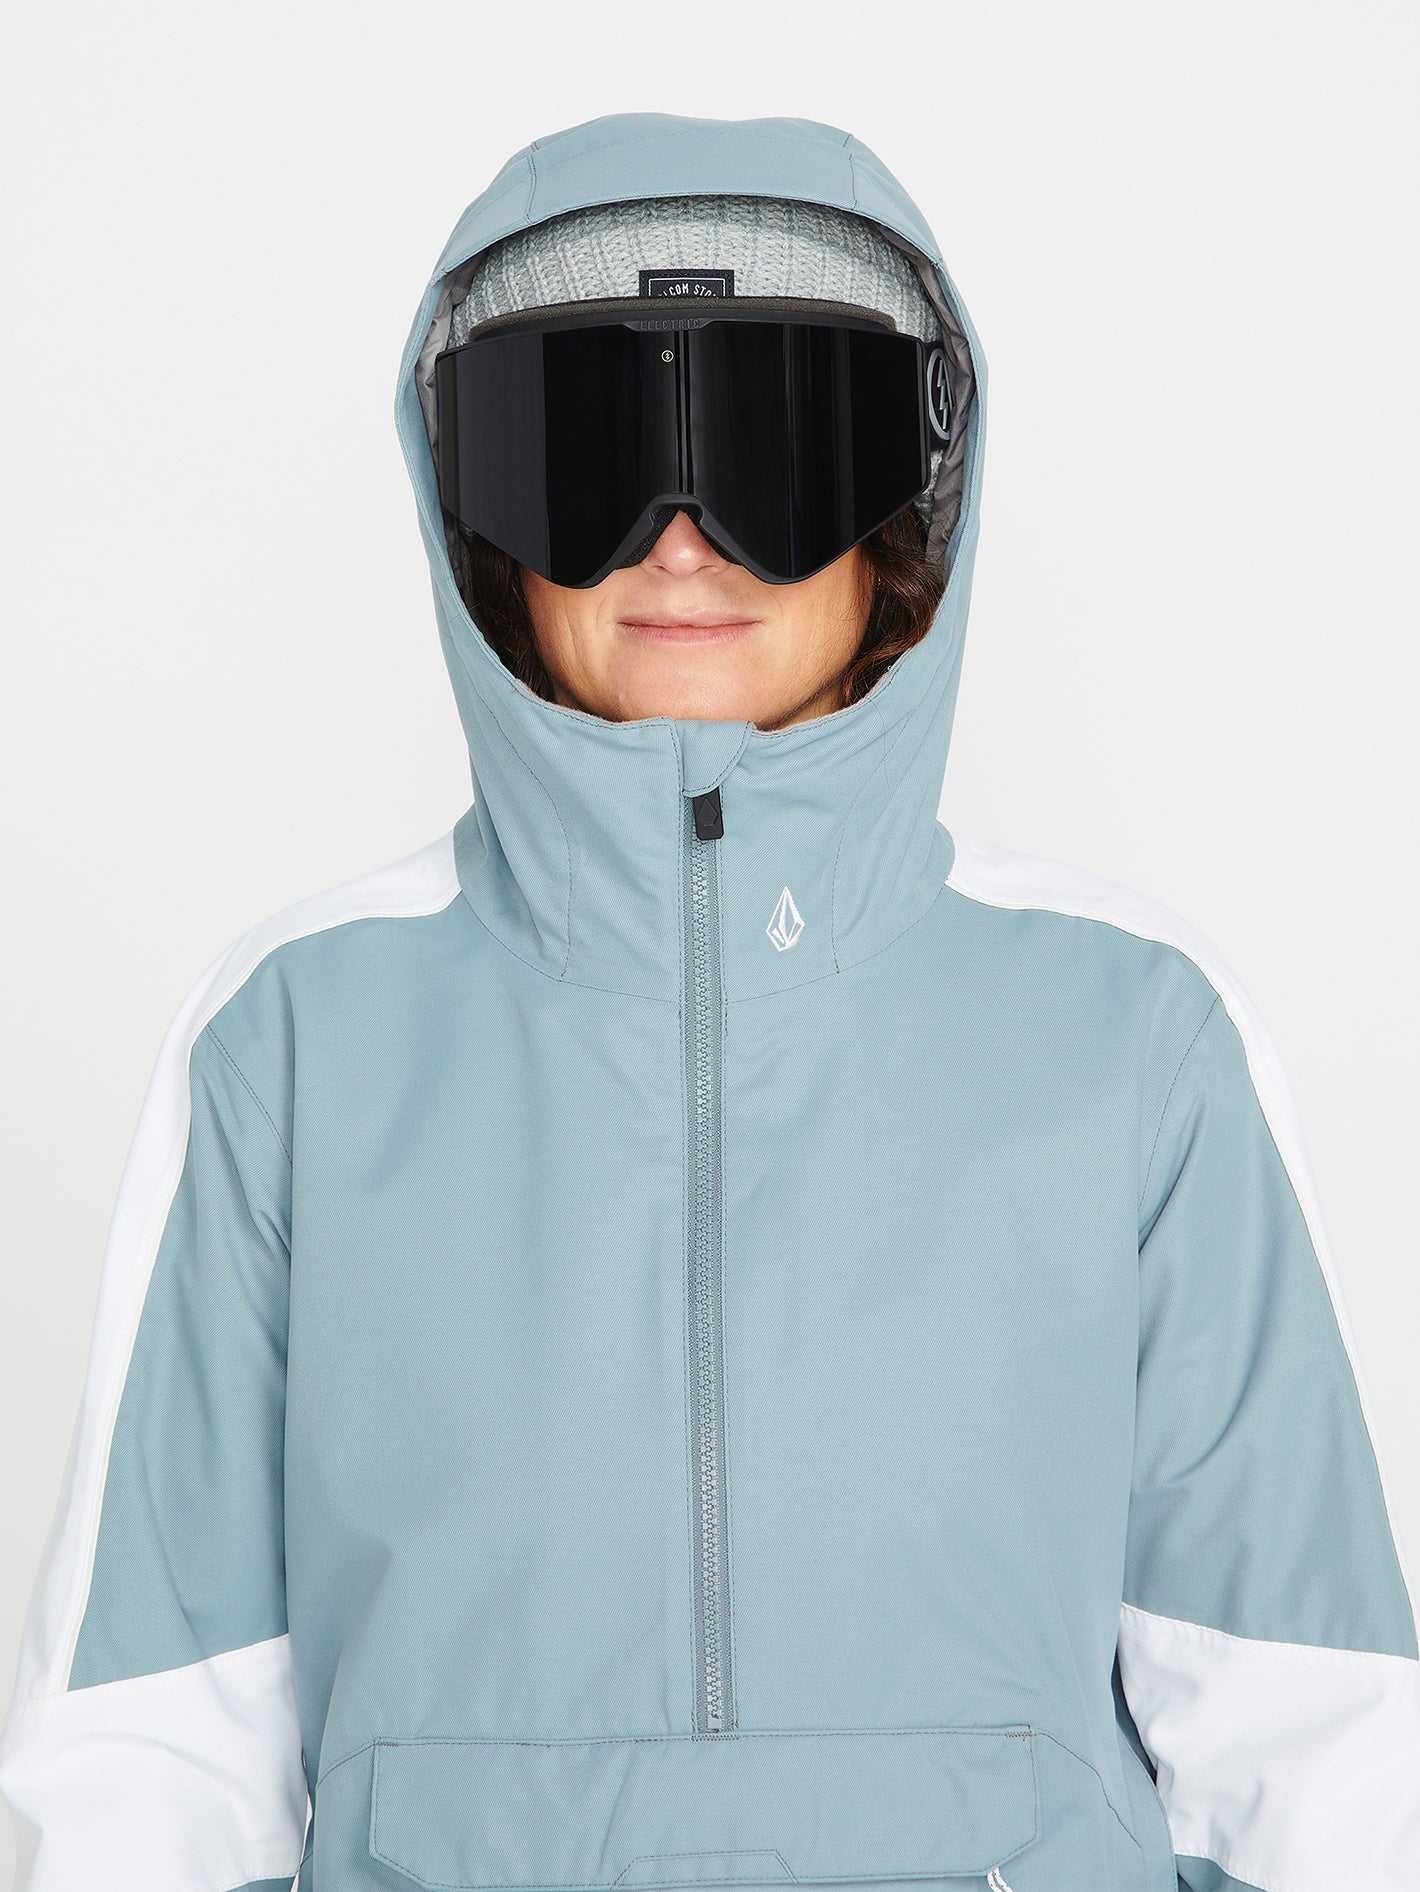 Volcom Mirror, S, ново, оригинално дамско ски/сноуборд яке